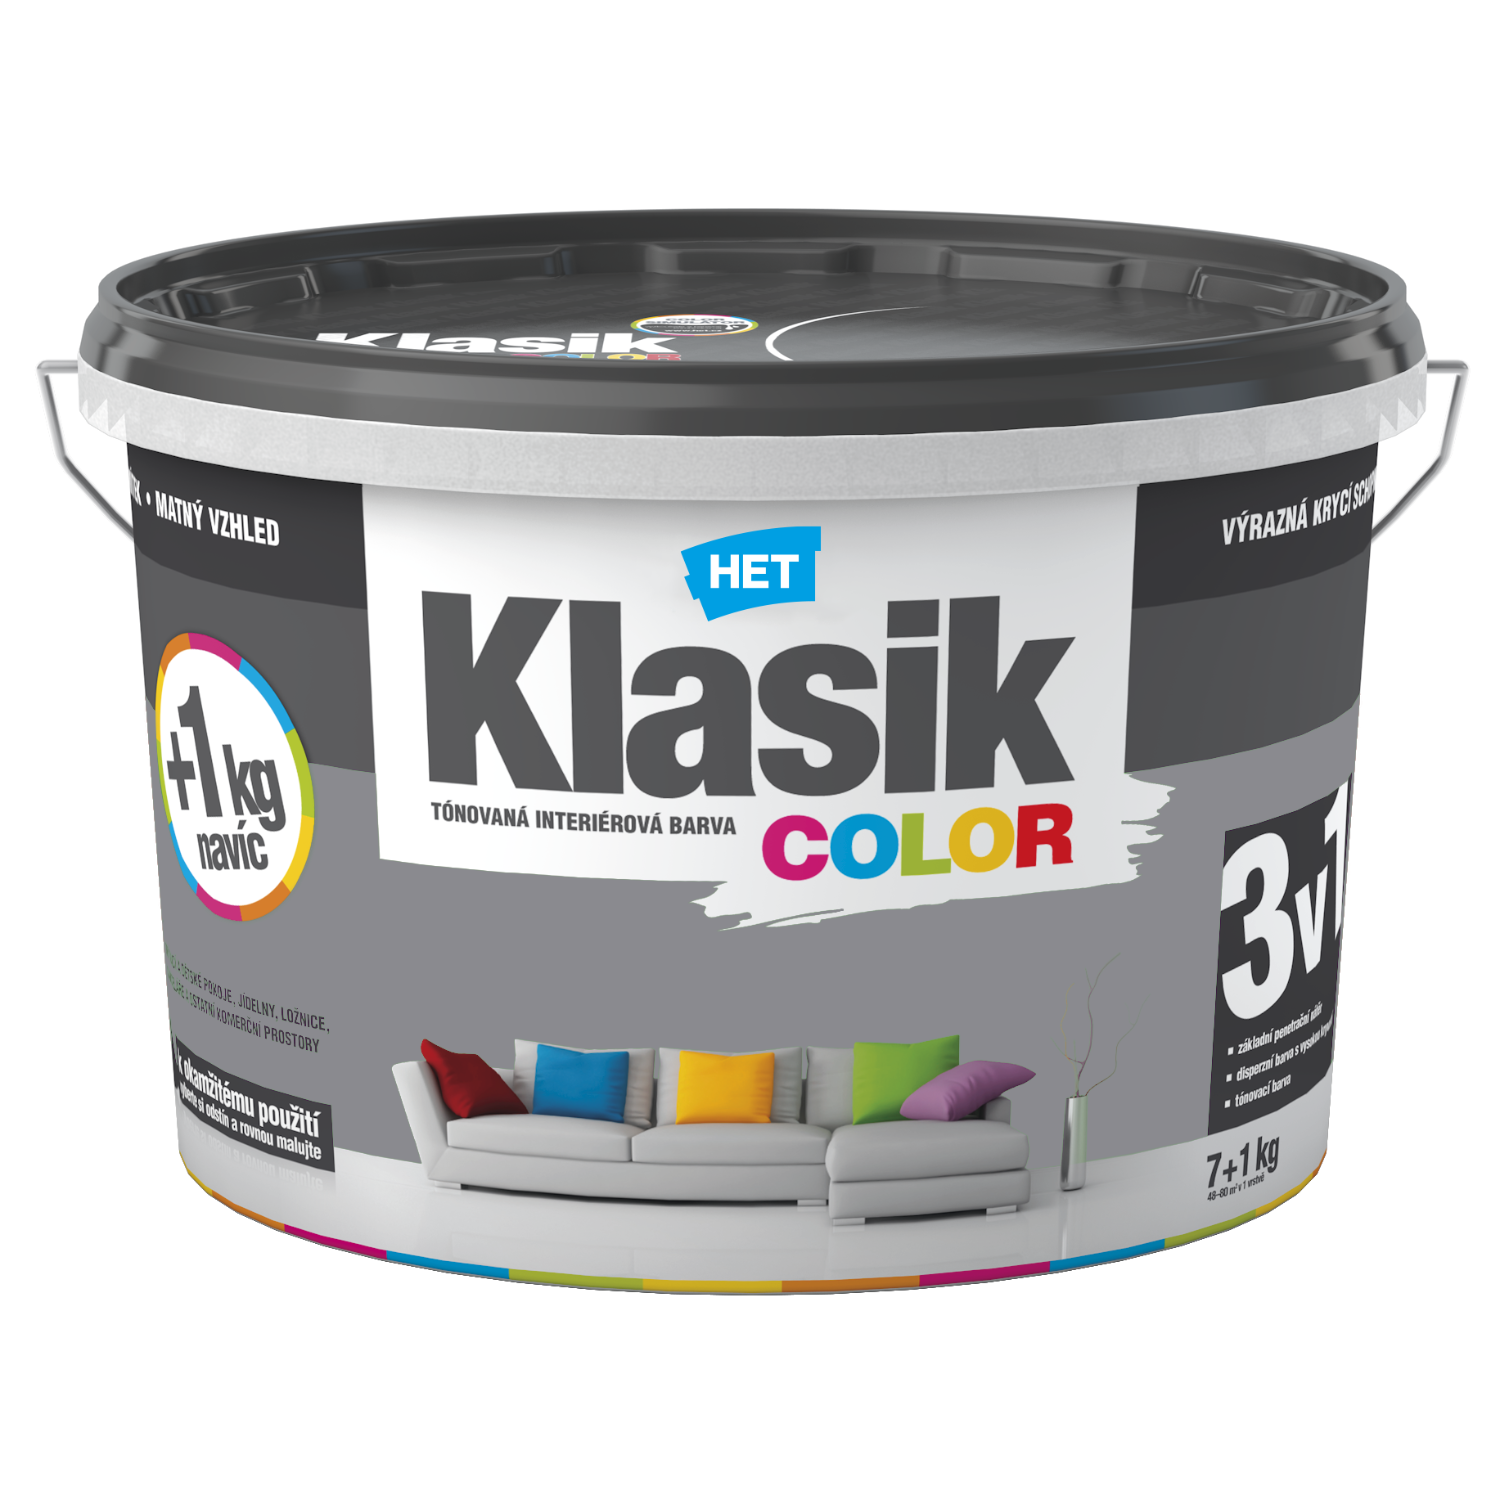 HET Klasik COLOR tónovaná interiérová akrylátová disperzná oteruvzdorná farba 7 kg + 1 kg zdarma, KC0147 - šedý bridlicový